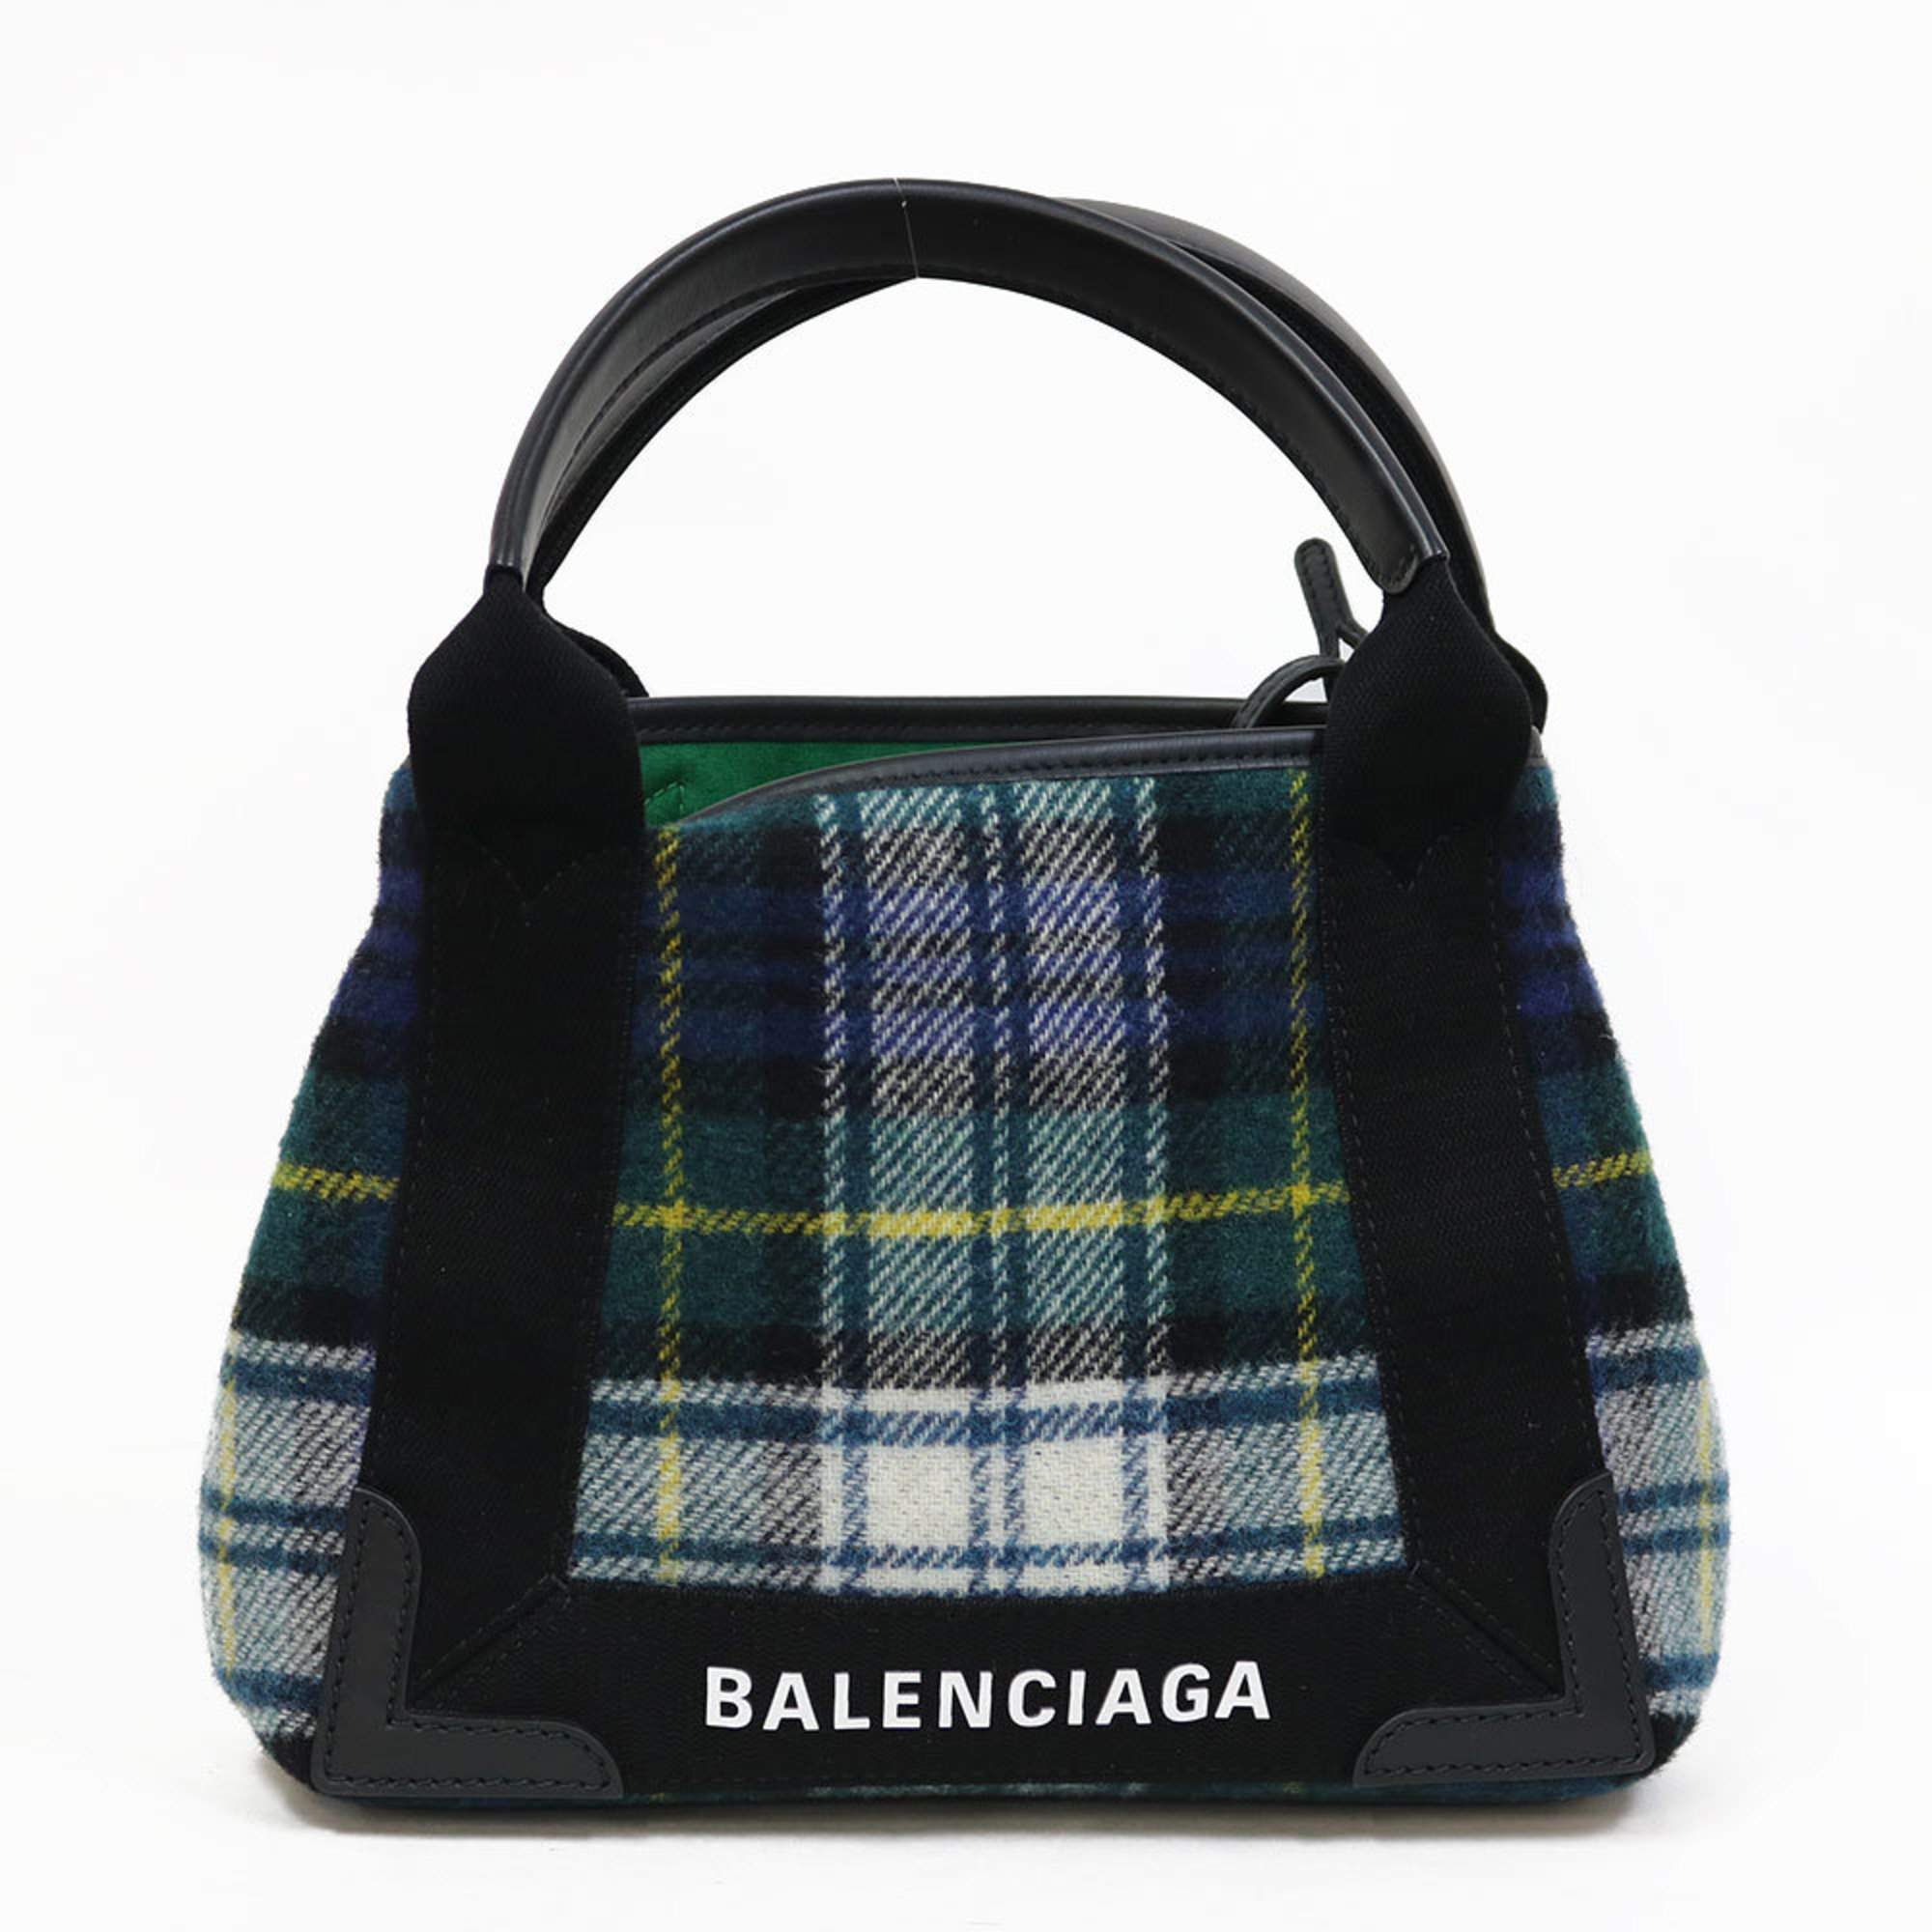 Balenciaga Handbag Navy Cabas Plaid Small Green Women's Men's